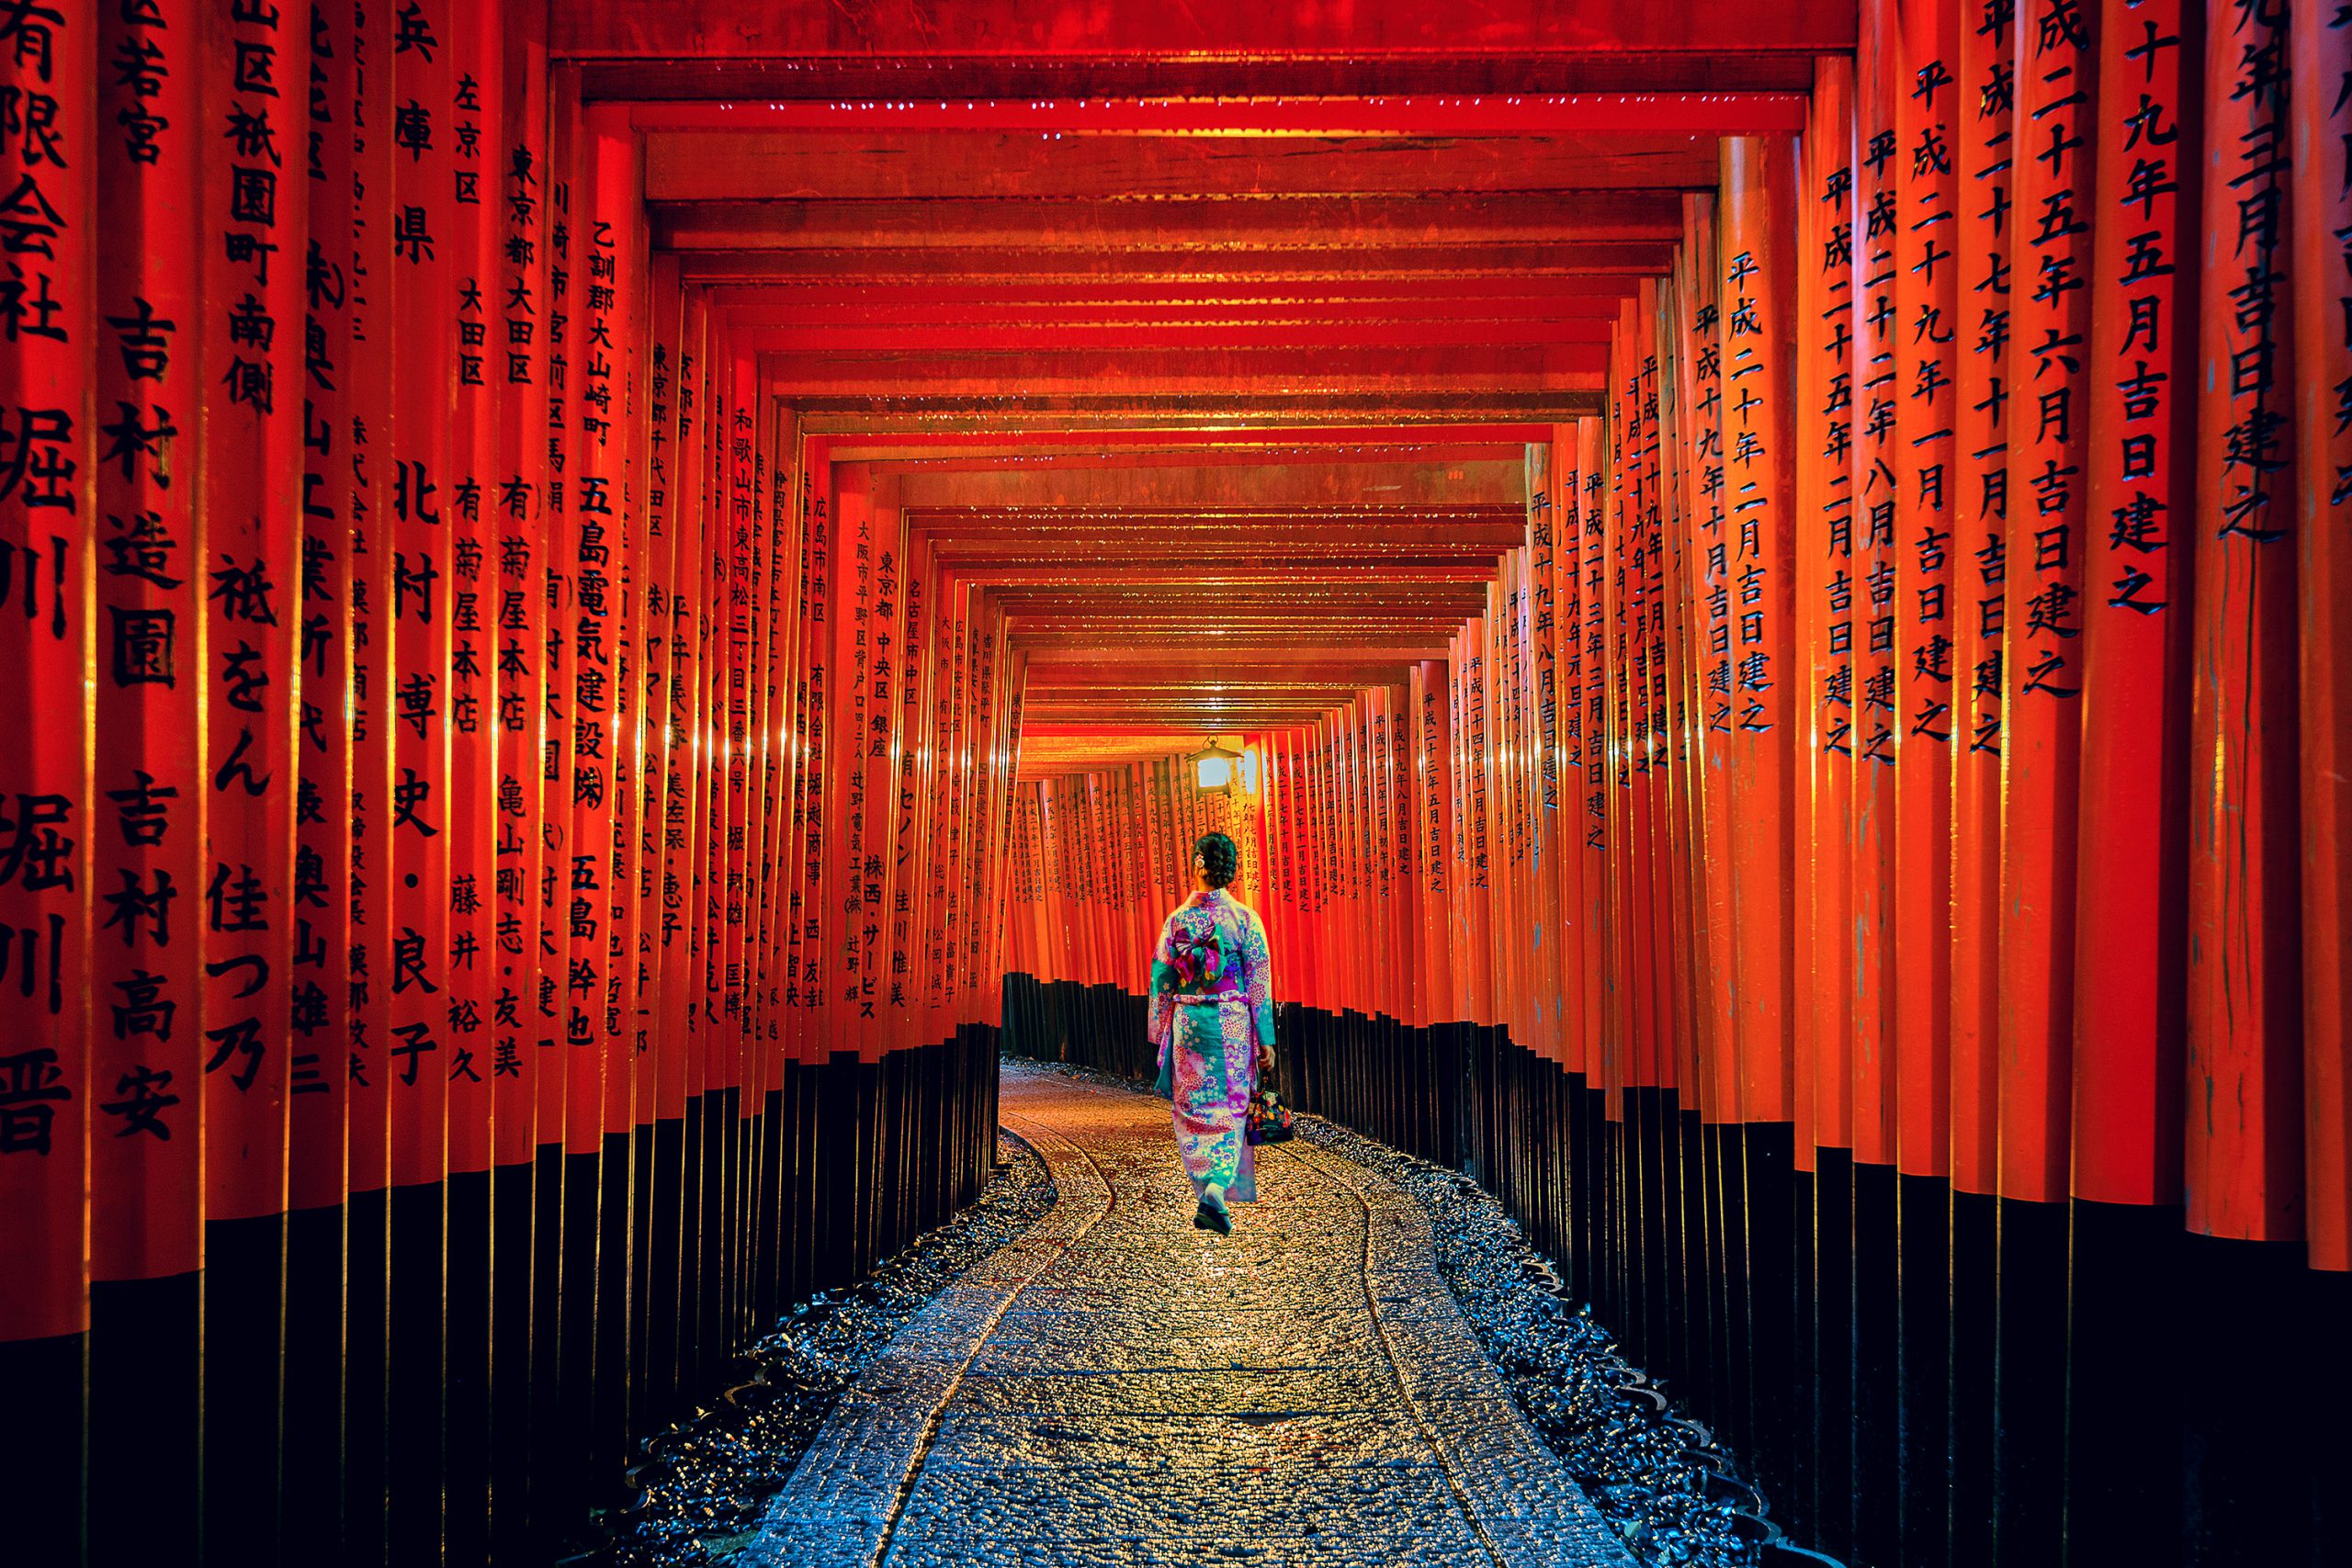 The red torii gates walkway at fushimi inari taisha shrine in Ky